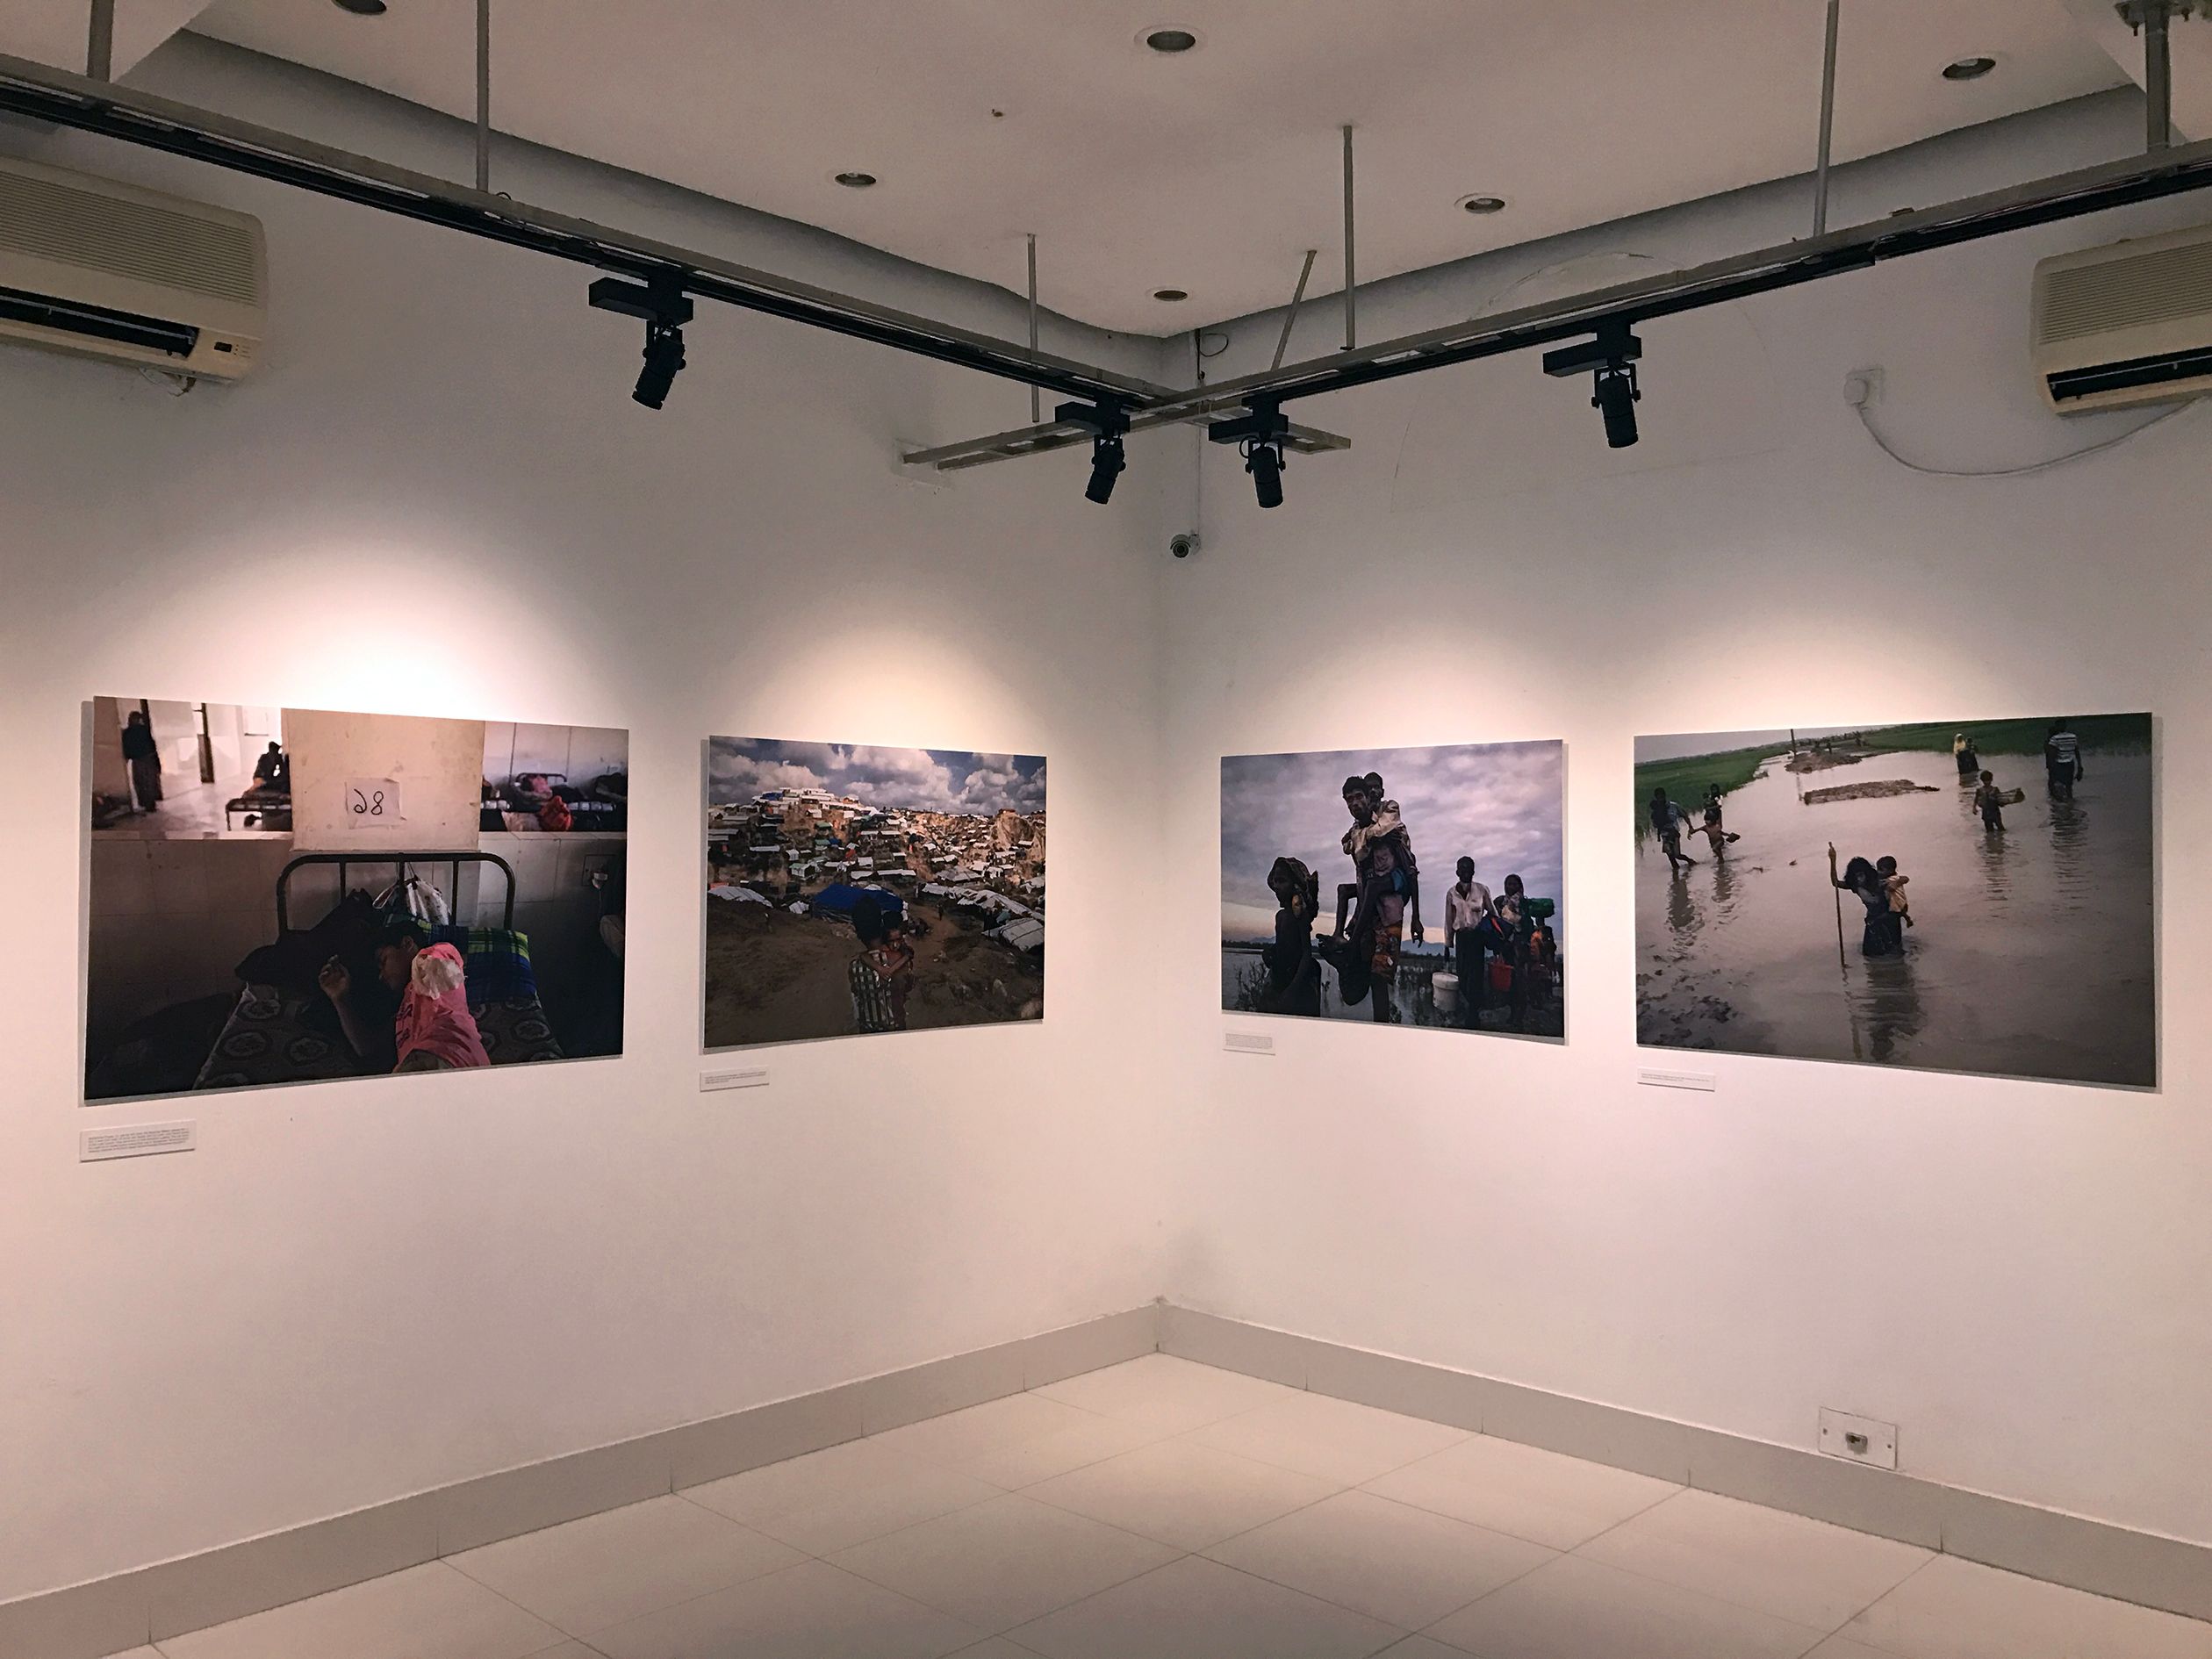 Exhibition Gallery at Alliance Française de Dhaka, Bangladesh